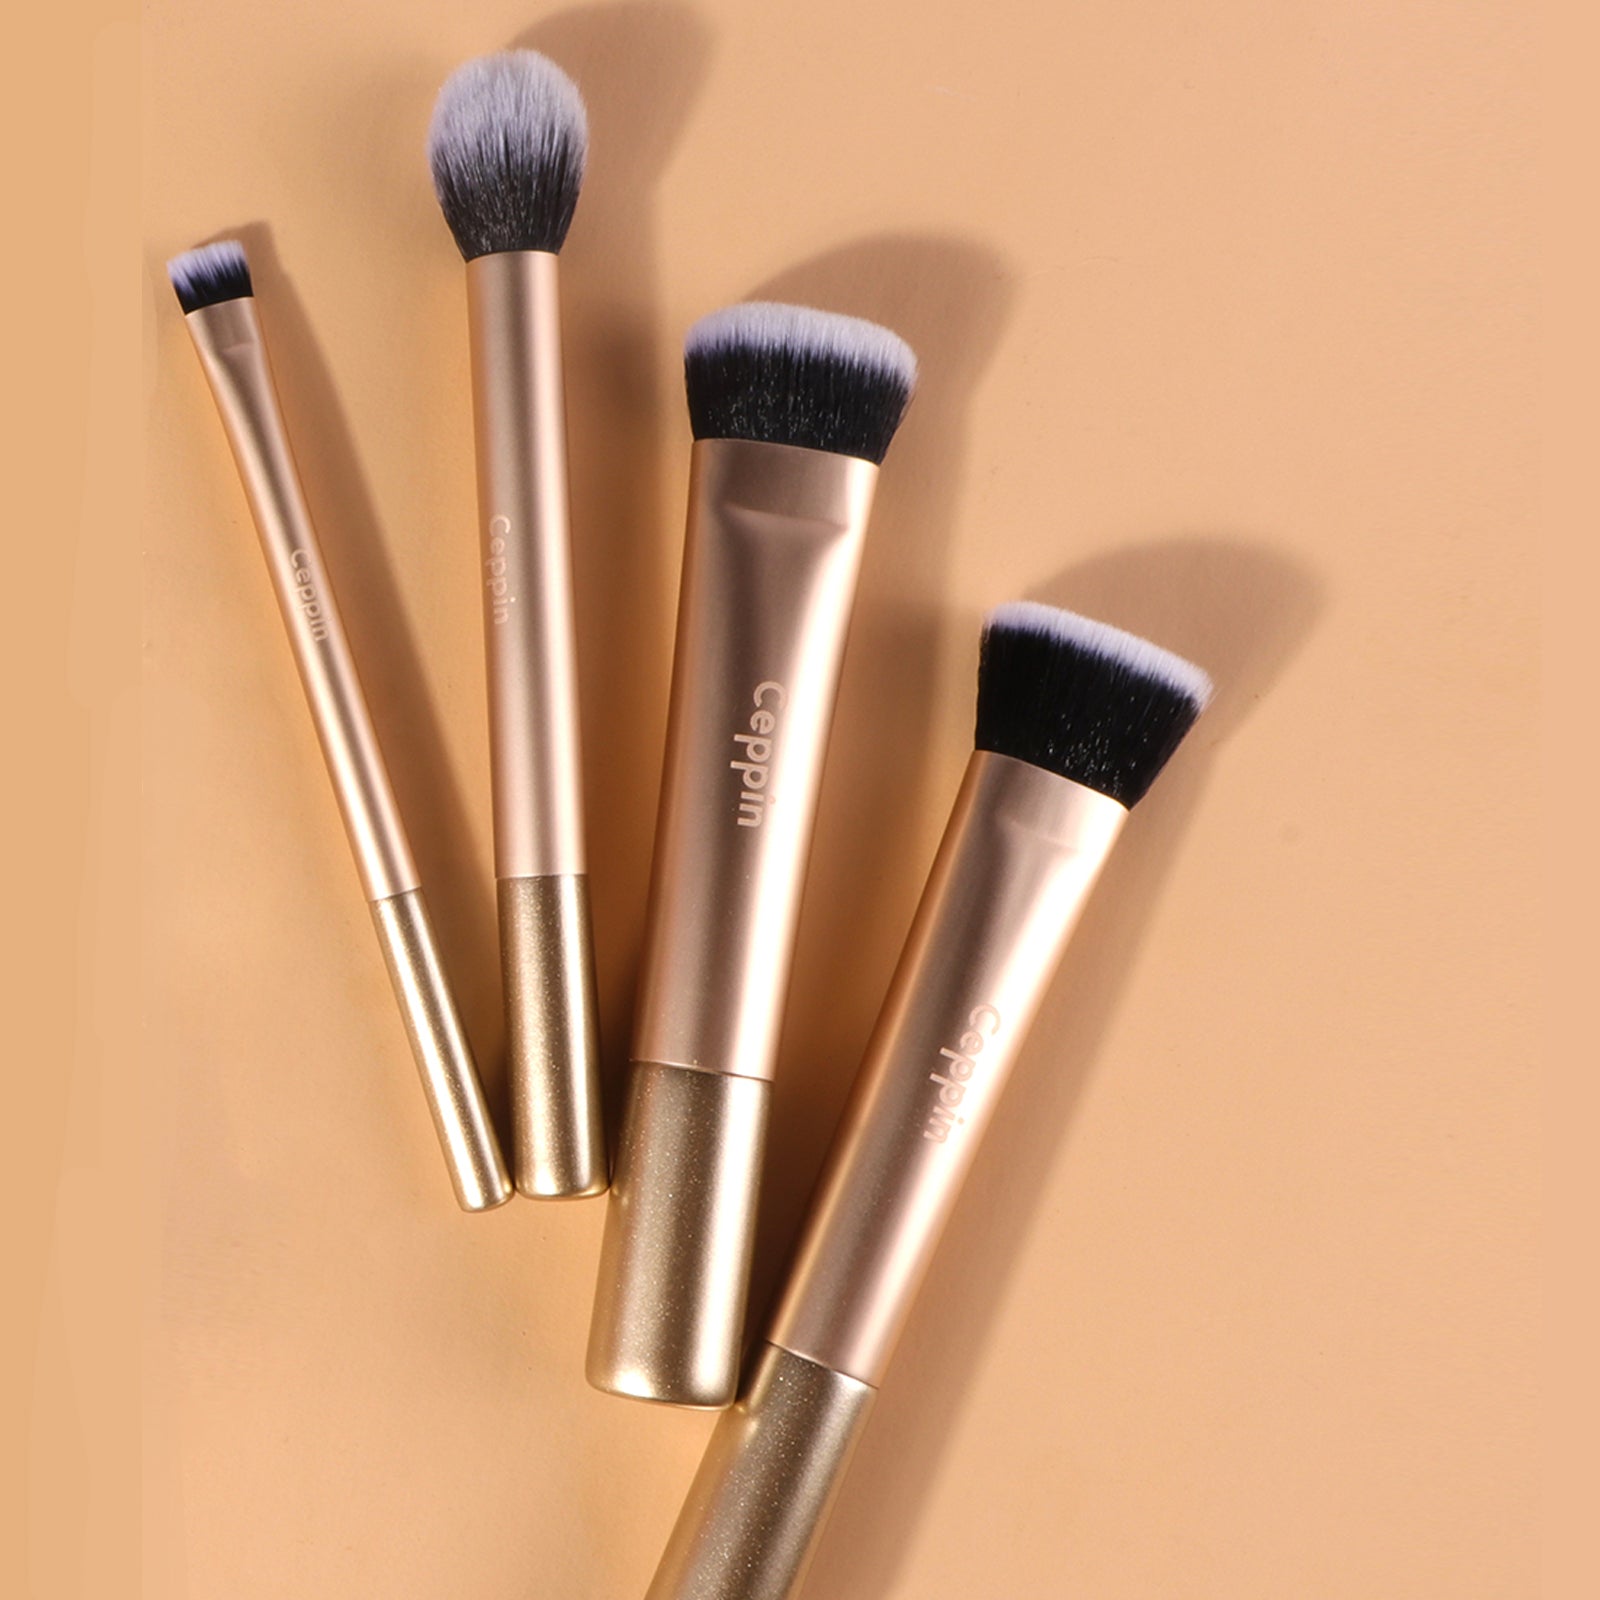 4Pcs Face Base Makeup Brushes, Vegan Soft for Foundation Highlight Concealer & Contour for Blending & Buffing, Pro Makeup Brush Set(Golden) (Golden+Silicon Bag)